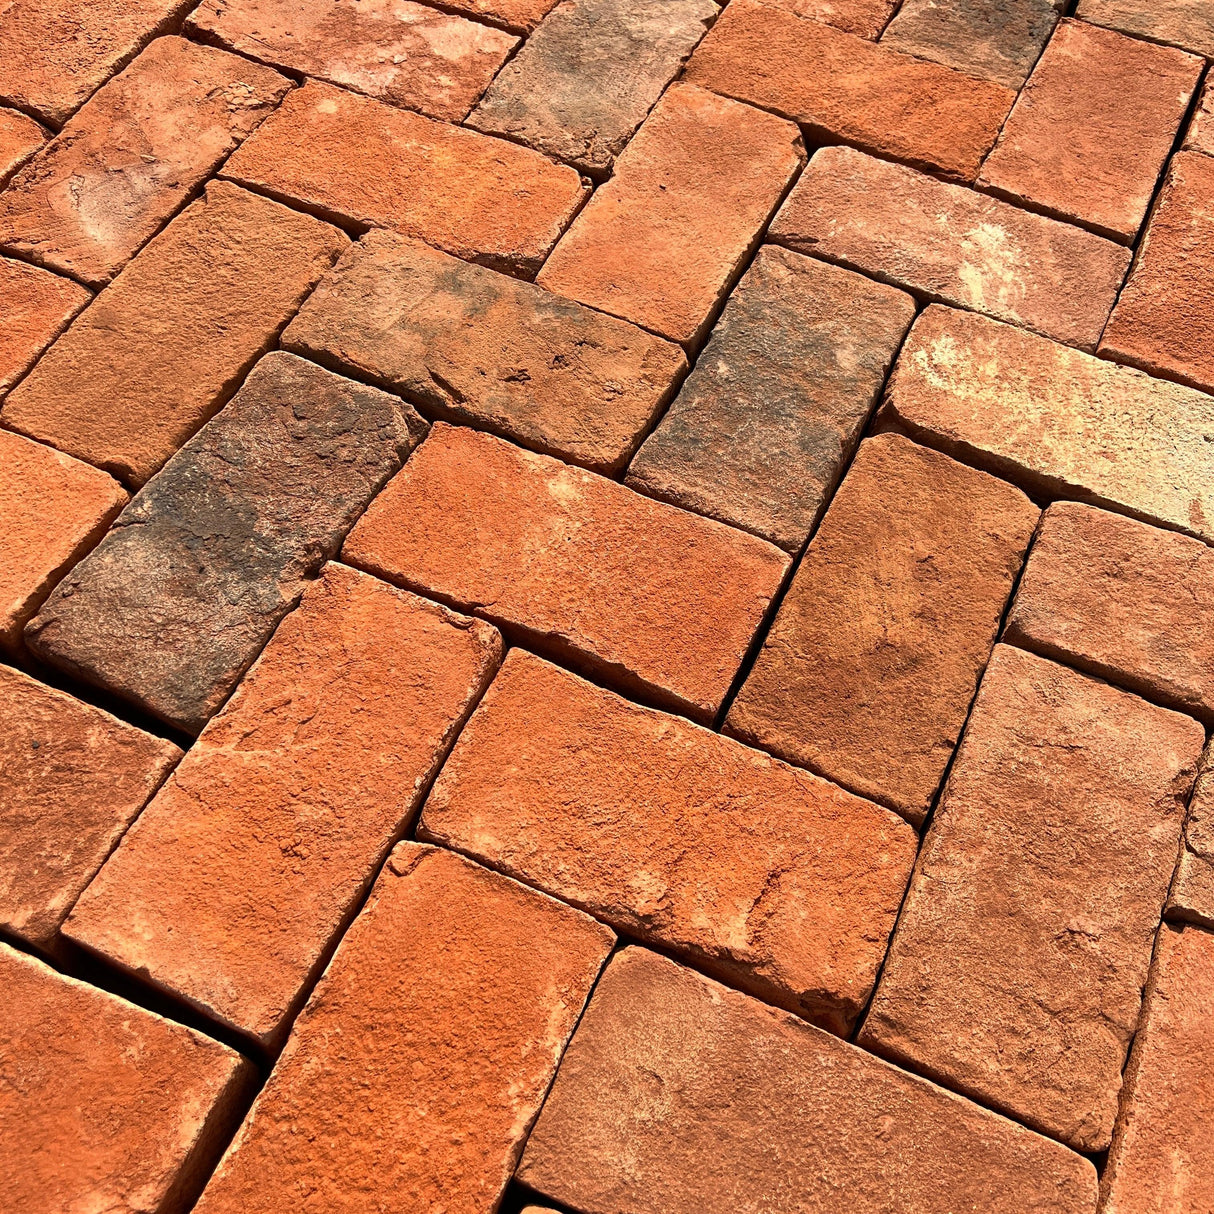 New Clay Paving Brick - Type 3 - Reclaimed Brick Company